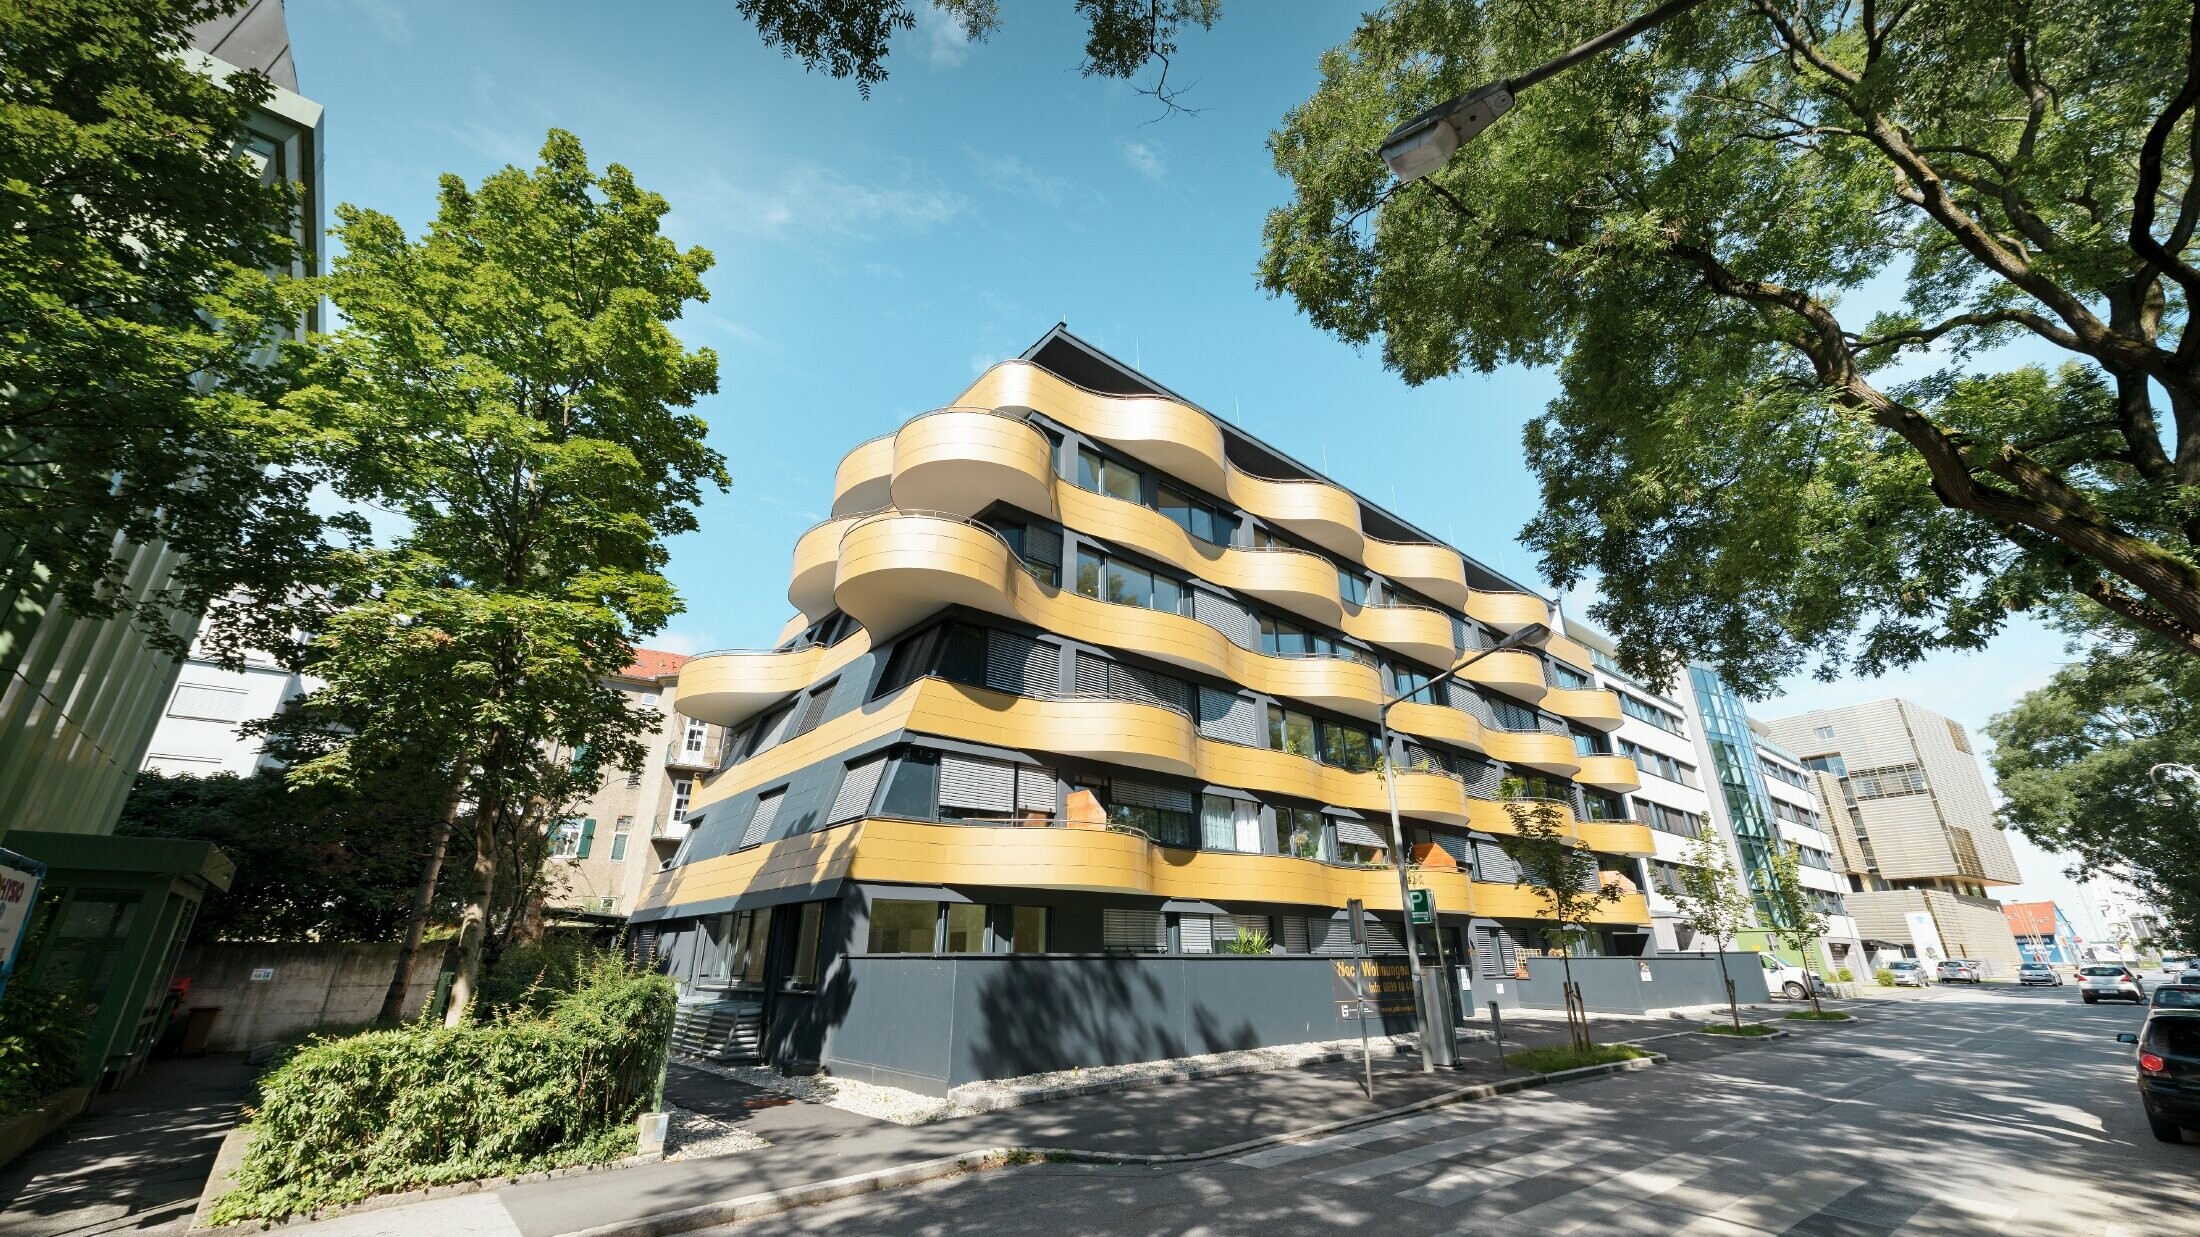 Stanovanjski kompleks »Goldene Welle« v Gradcu v Avstriji, z aluminijastimi kompozitnimi ploščami v zlati barvi, balkoni pa so zaobljeni v obliki valov 